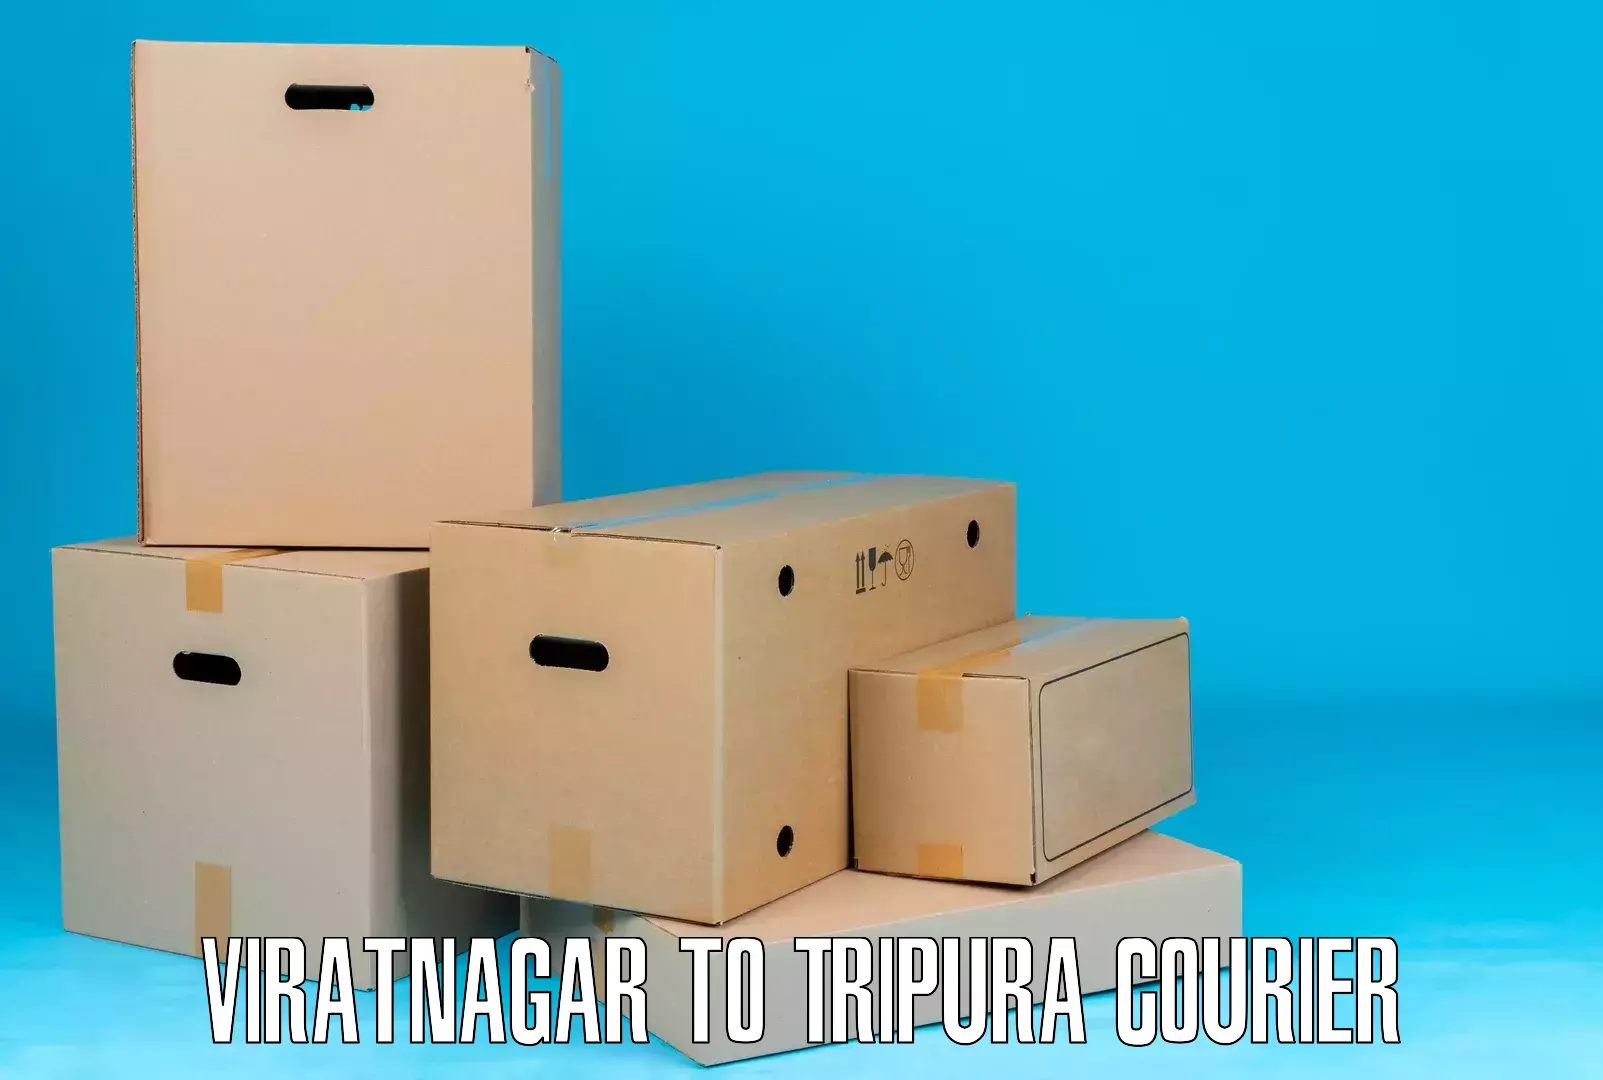 Flexible delivery schedules Viratnagar to Kailashahar